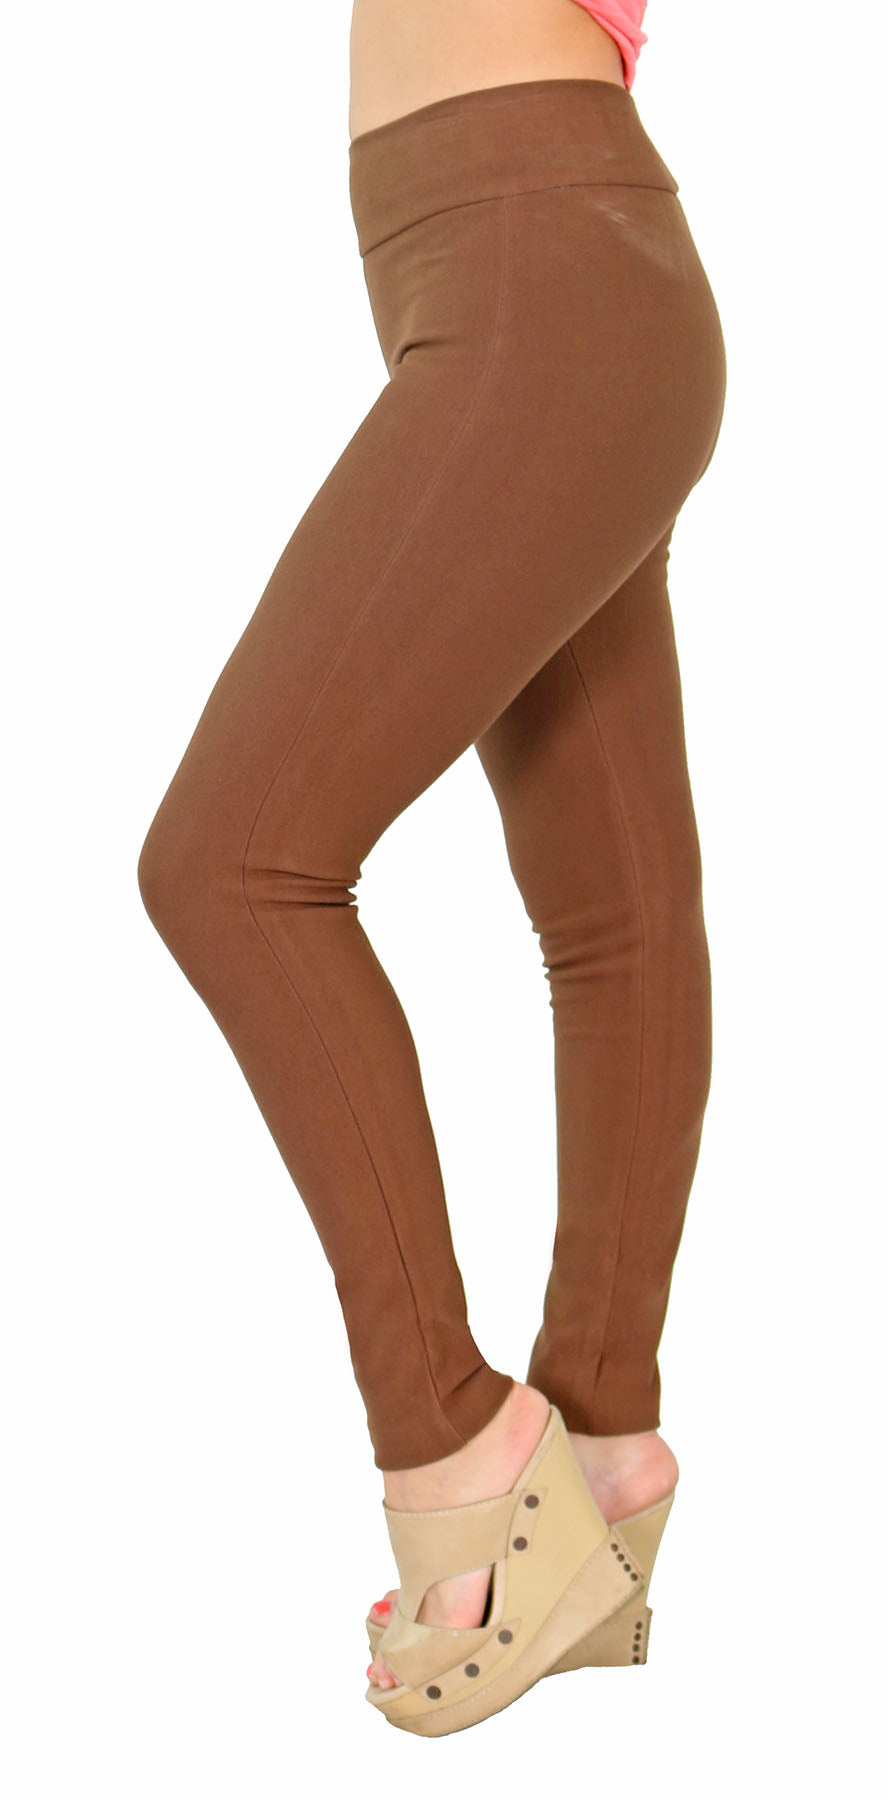 Vertrouwen sympathie koelkast TrueSlim™ Brown Leggings for Women – TrueSlim Jeans